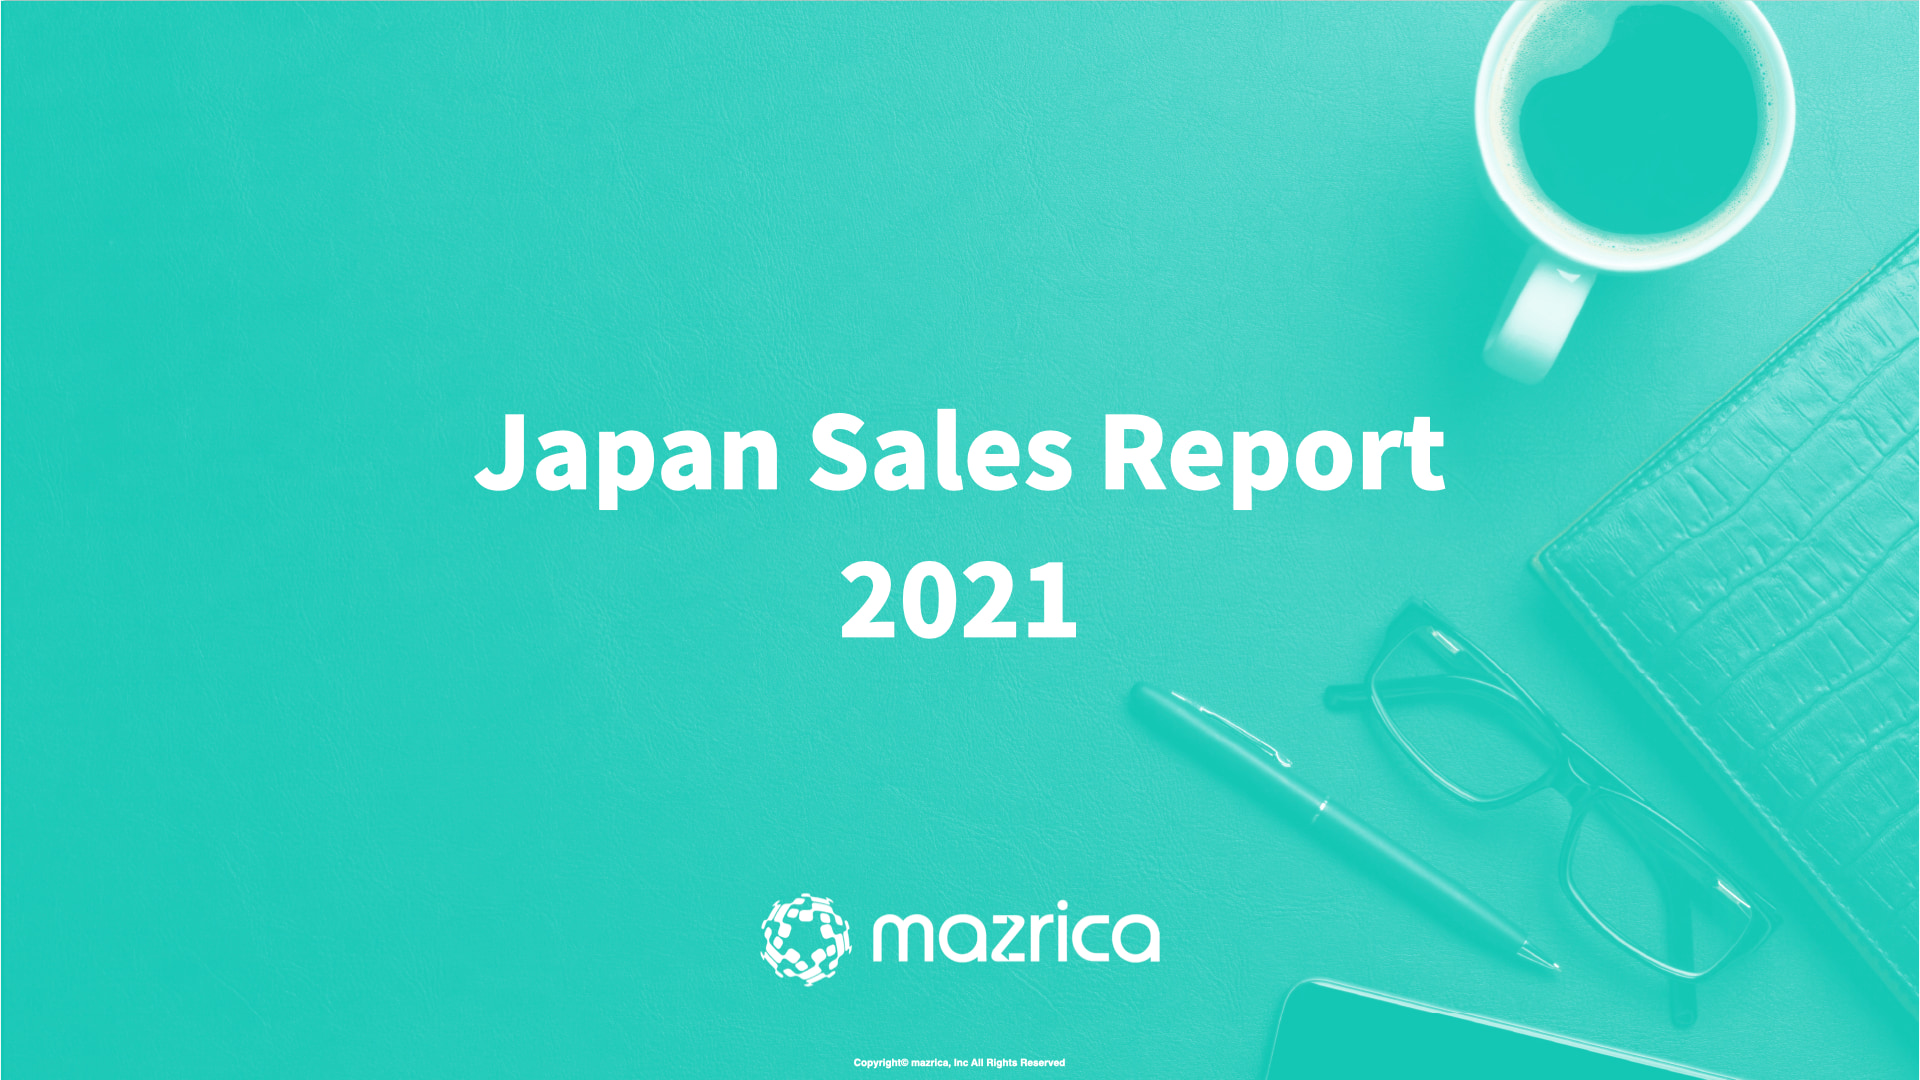 Japan Sales Report 2021 〜コロナ禍における国内営業組織の動向調査〜